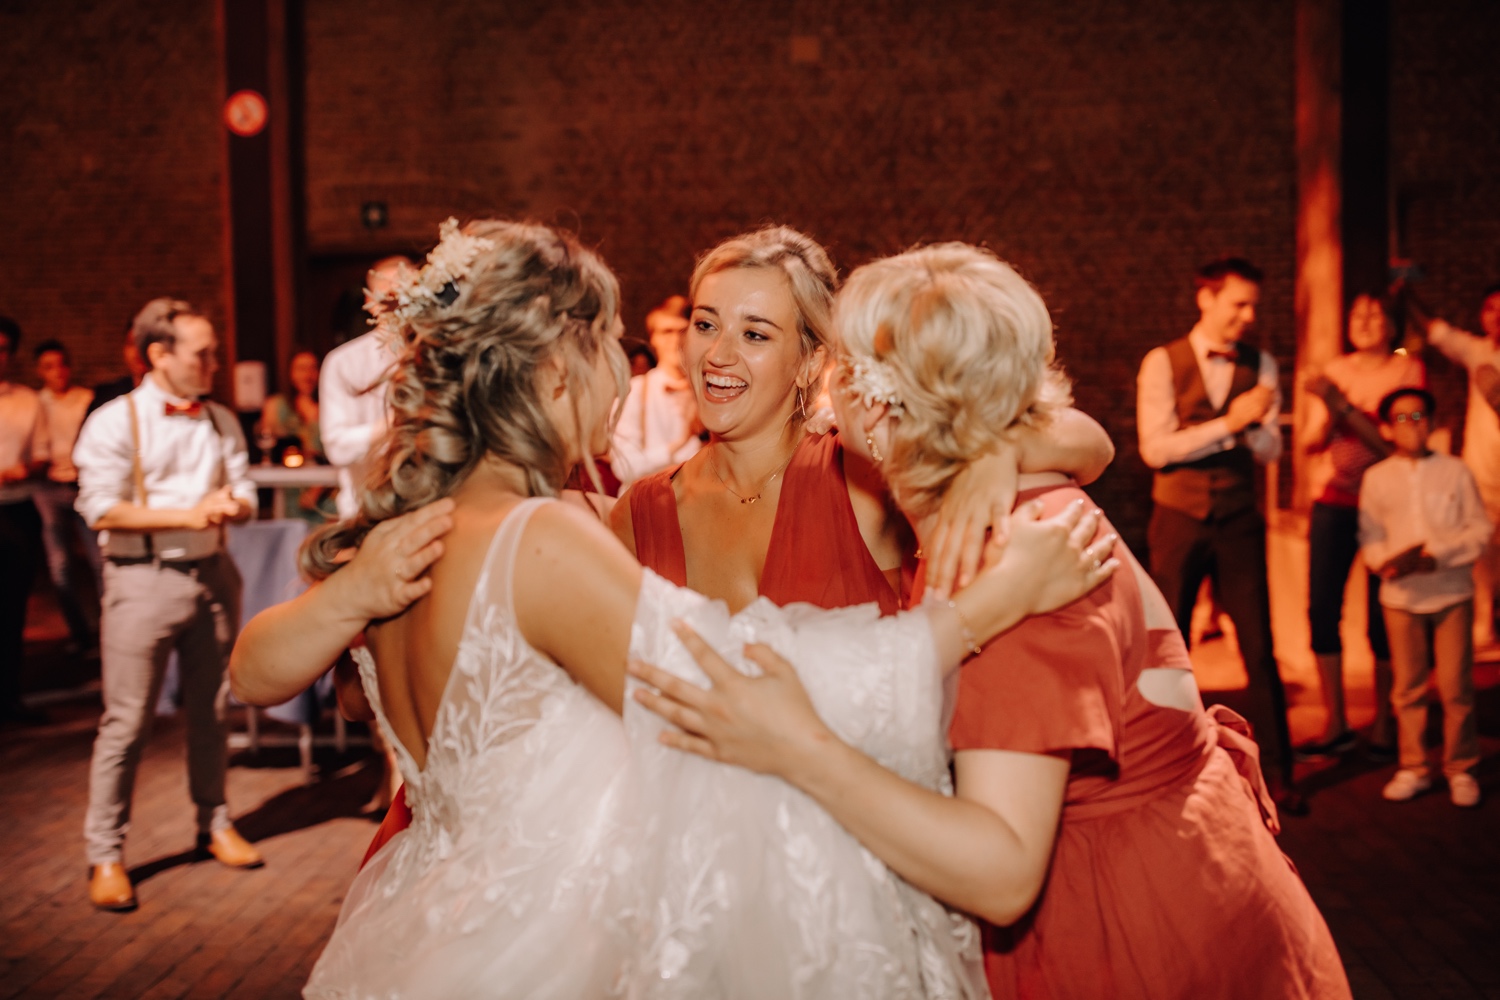 Huwelijksfotograaf Limburg - bruidsmeisjes knuffelen elkaar op de dansvloer